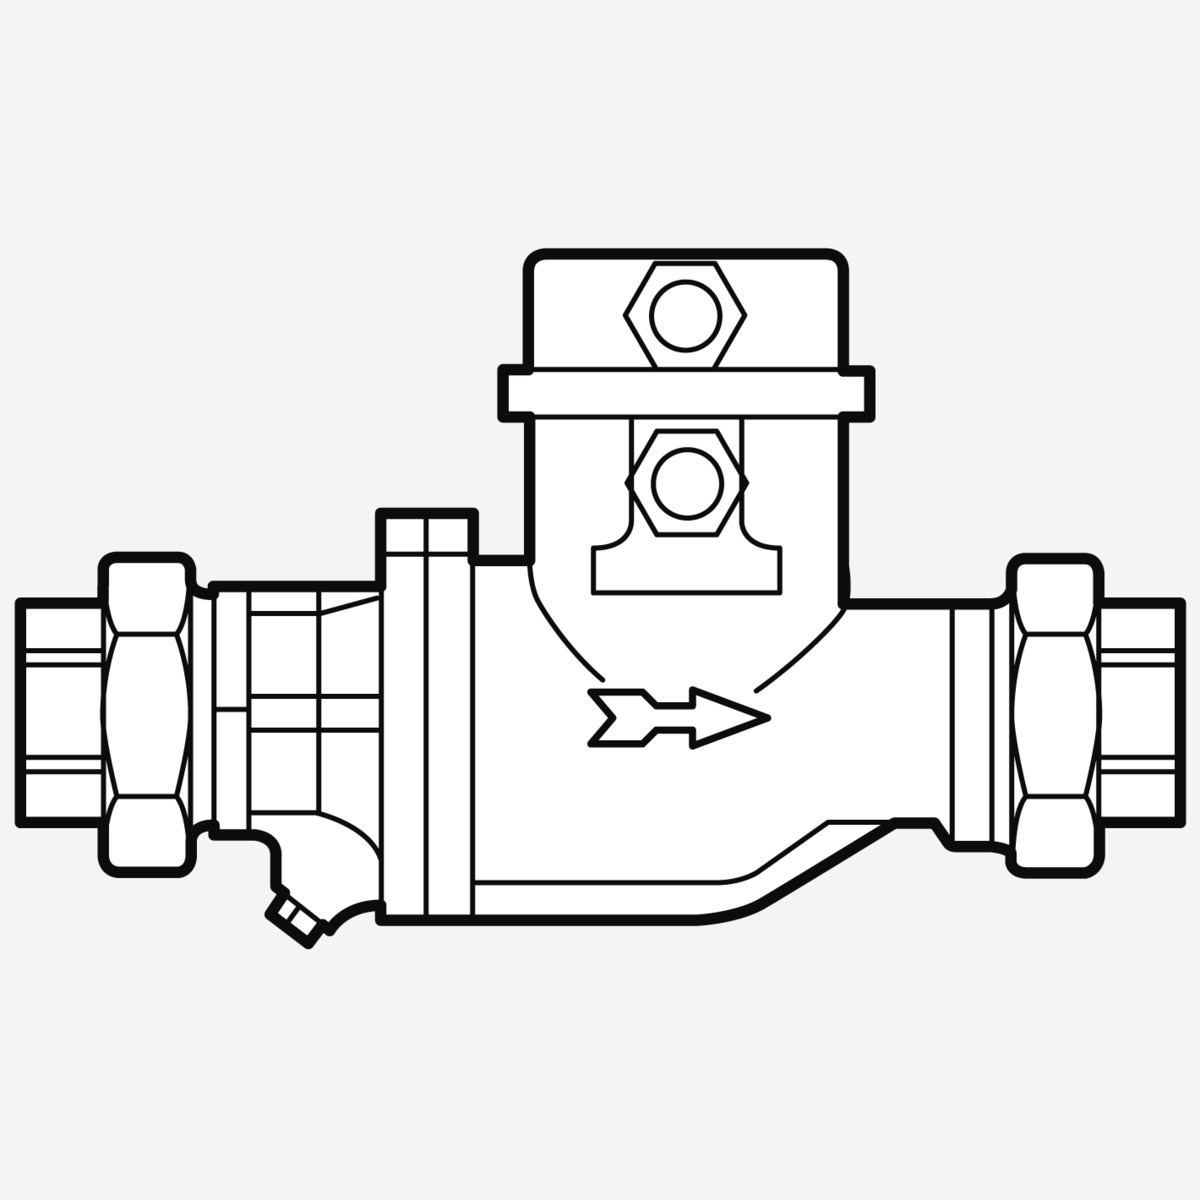 Weishaupt Gaszähler QA 25 / Ausf. GI / G1 /PN4 QN 2,5-40m³/h Ferngeber NF/HF mit Verschraubung G1 Innengewinde Baulänge 185 mm